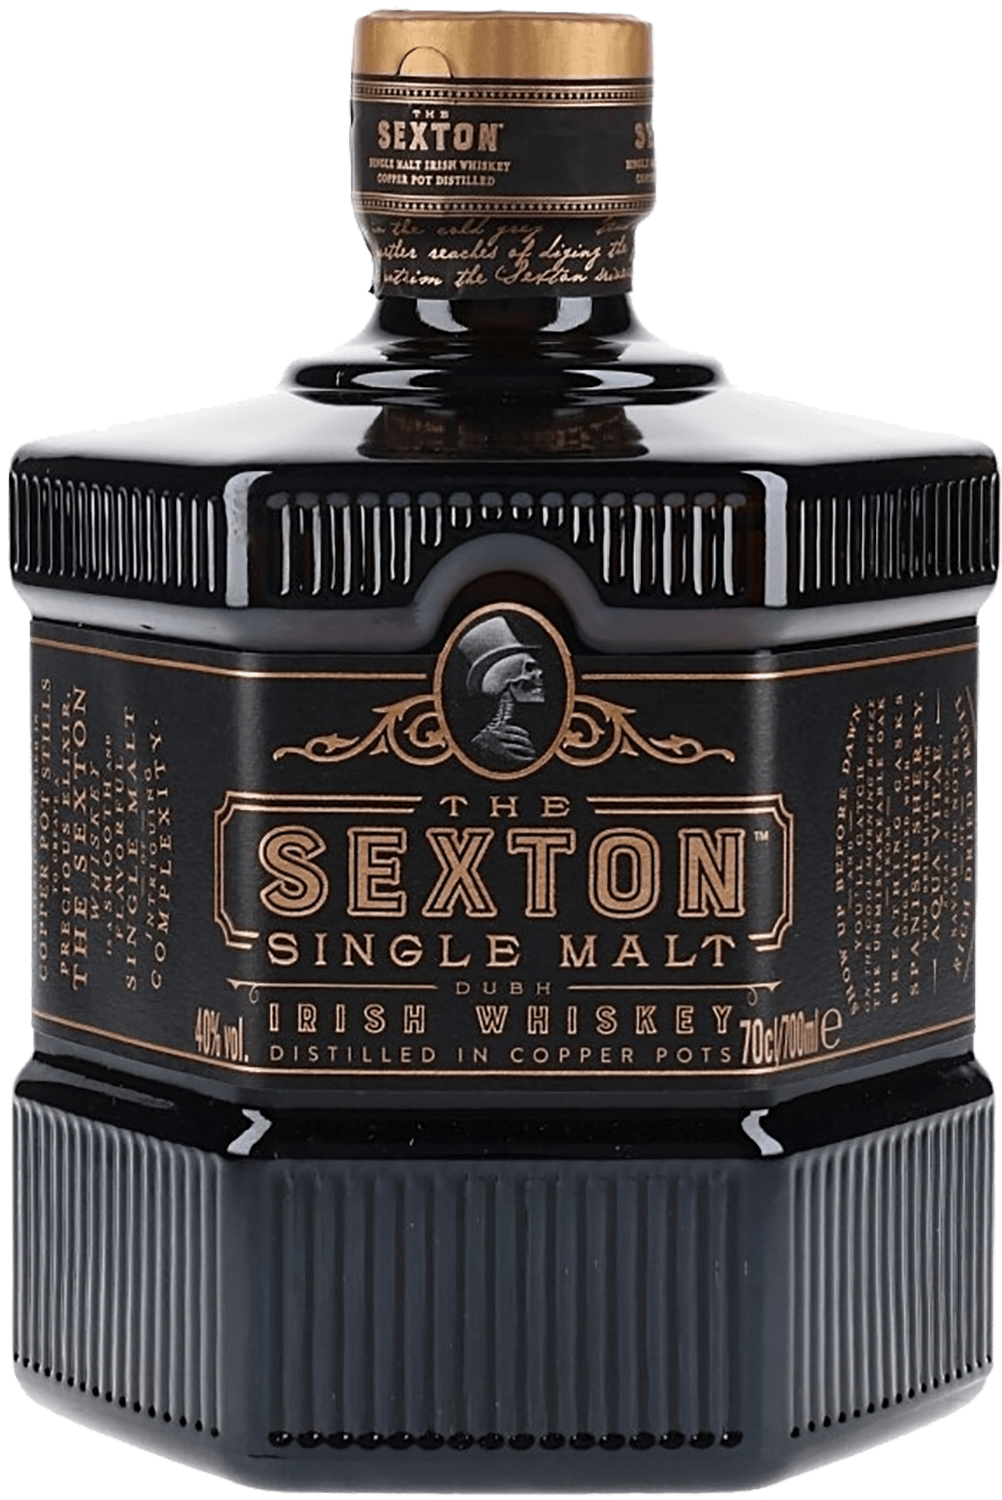 The Sexton Single Malt Irish Whiskey glendalough 13 y o single malt irish whiskey gift box